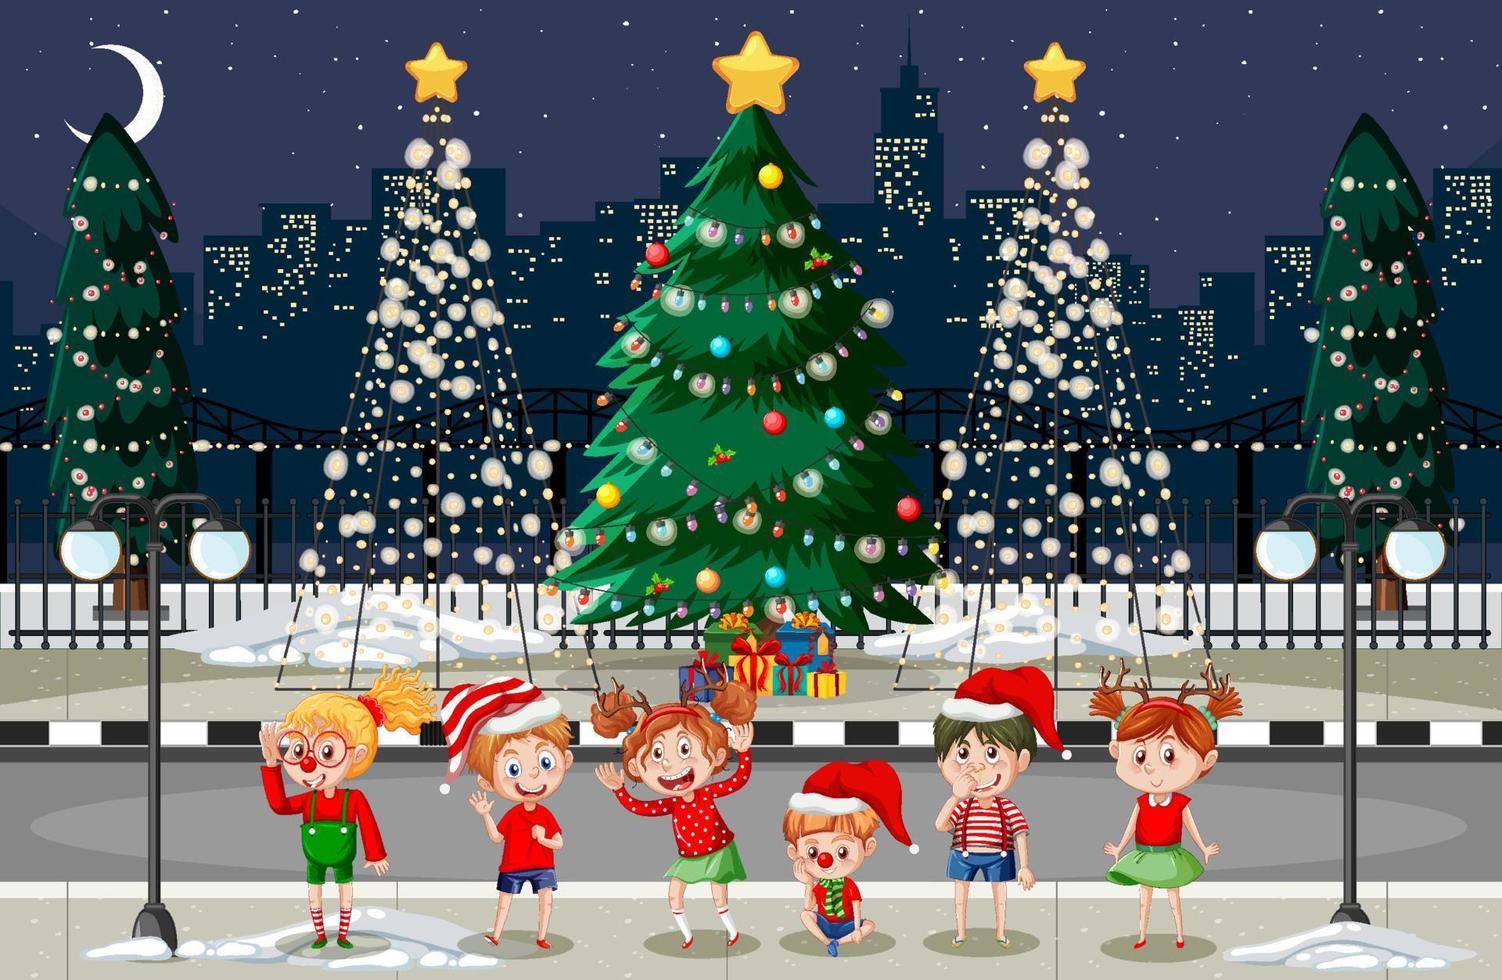 Christmas winter scene with happy children vector